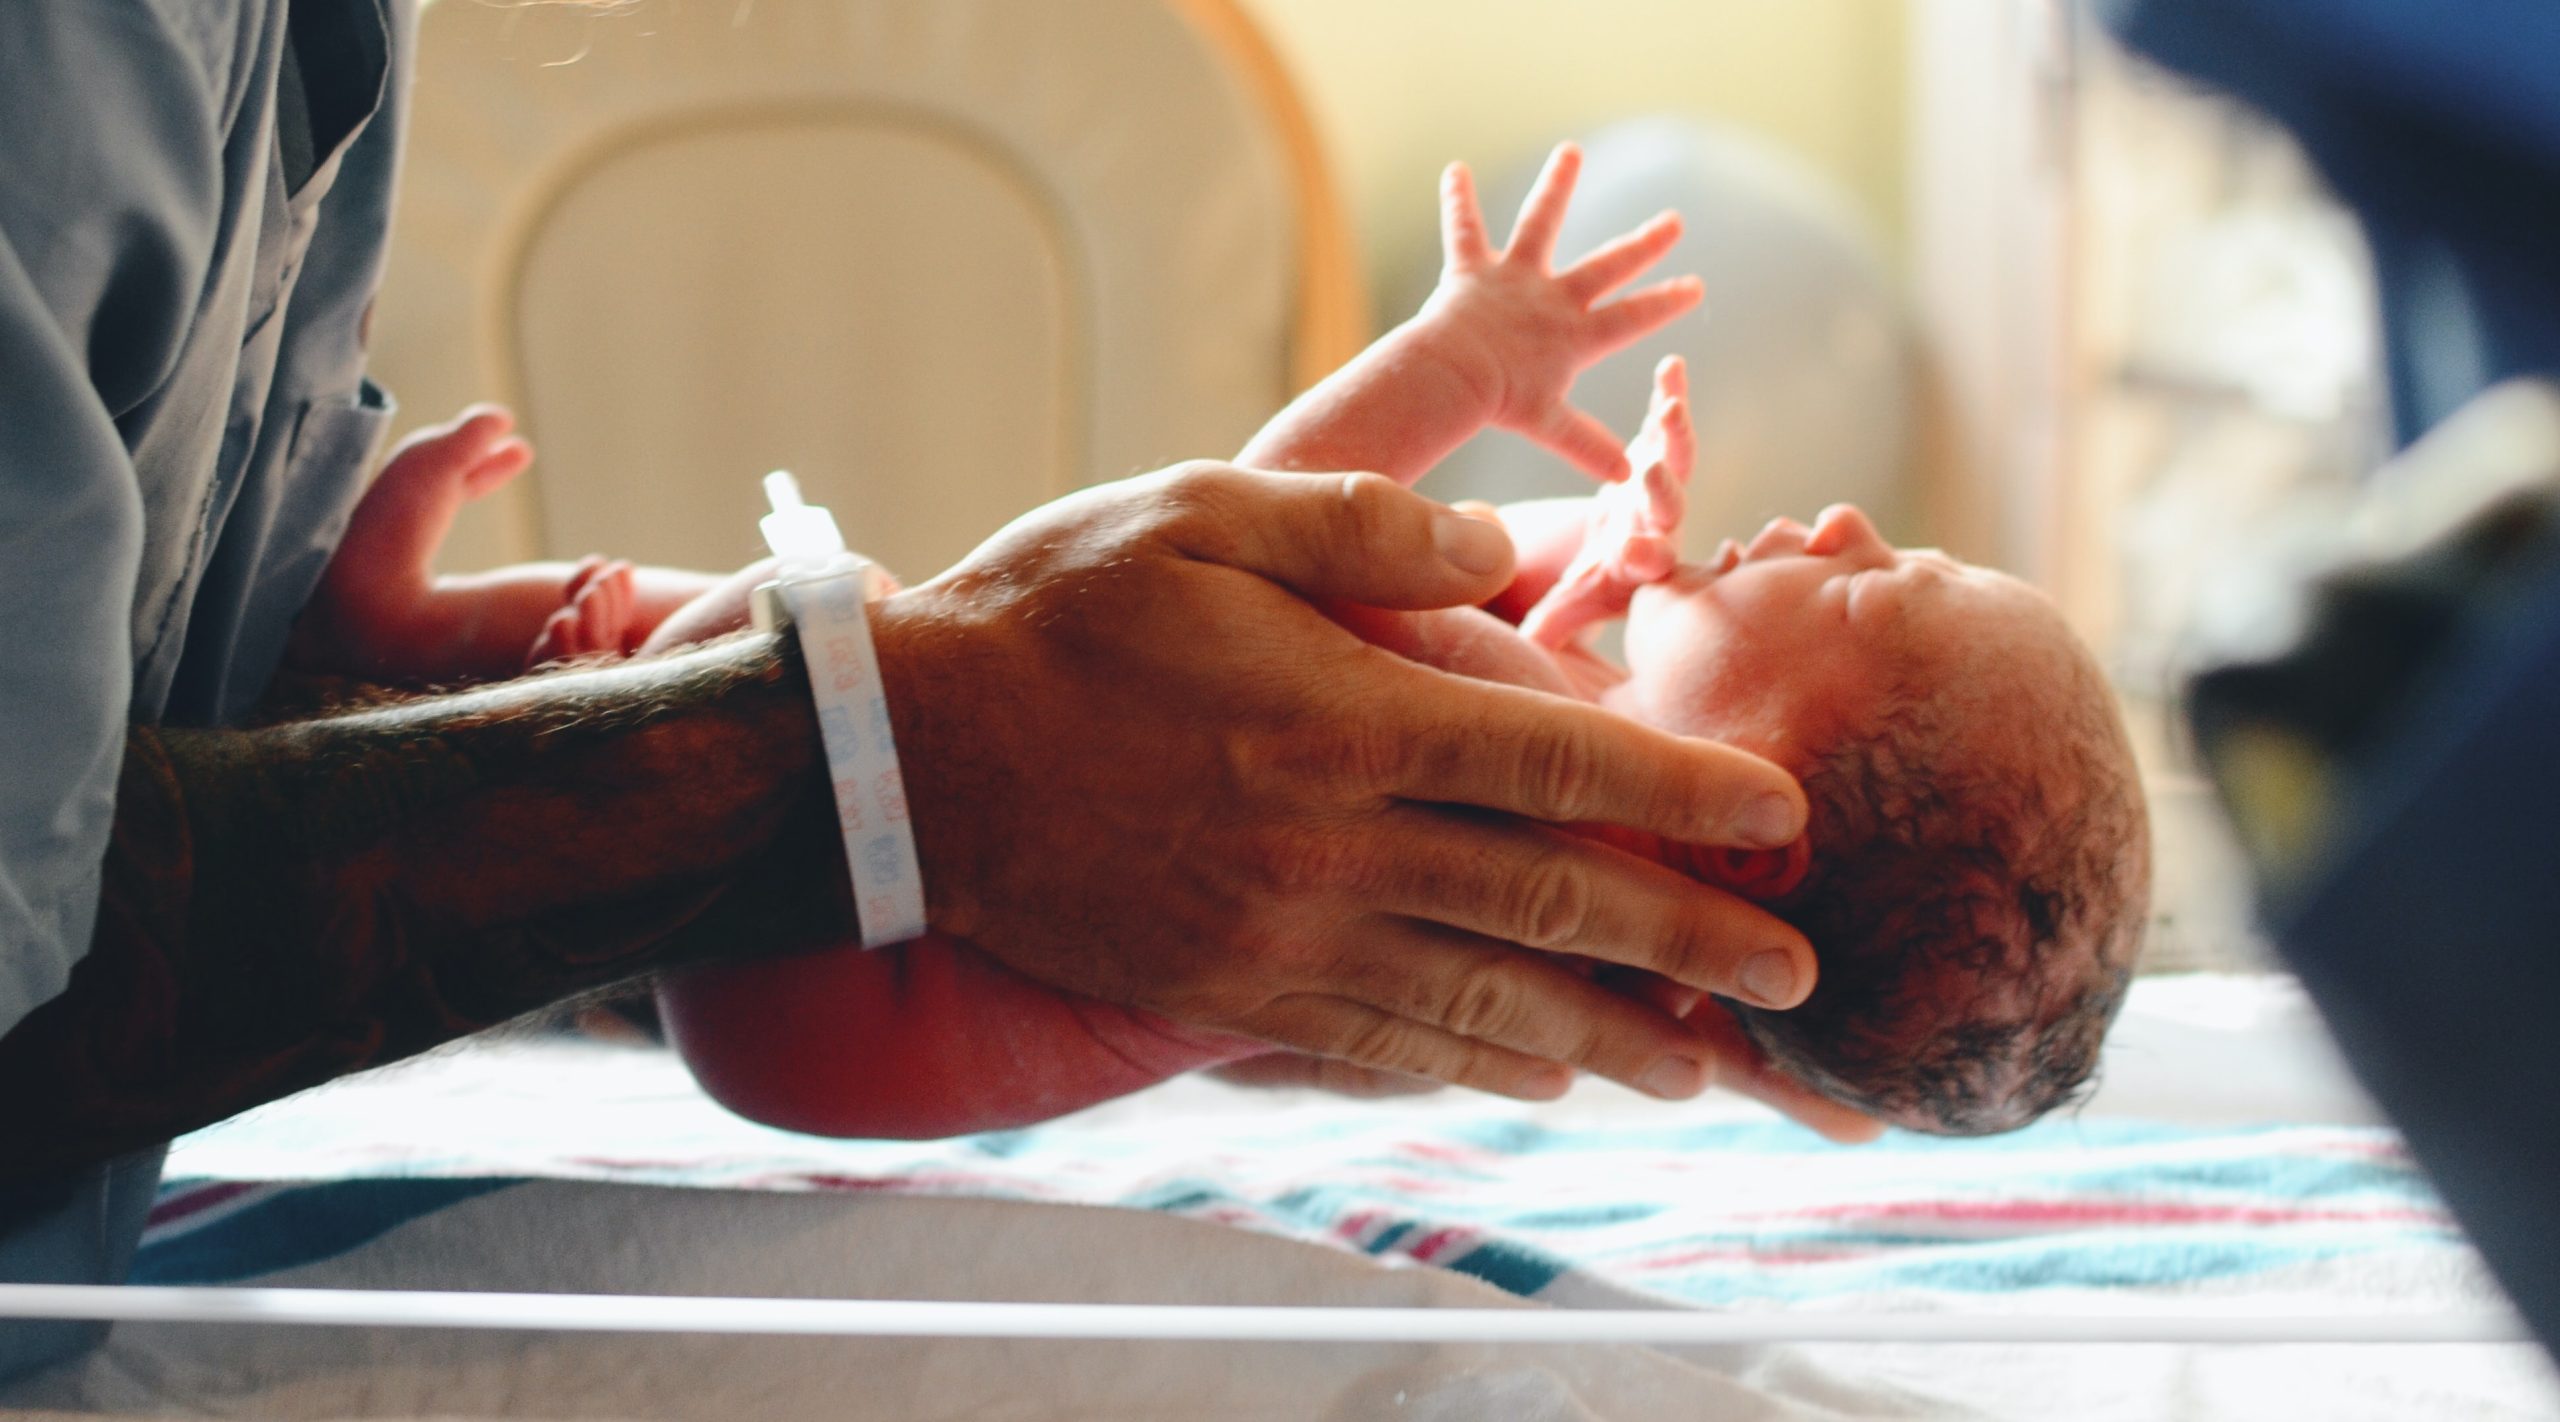 Newborn baby in a hospital.